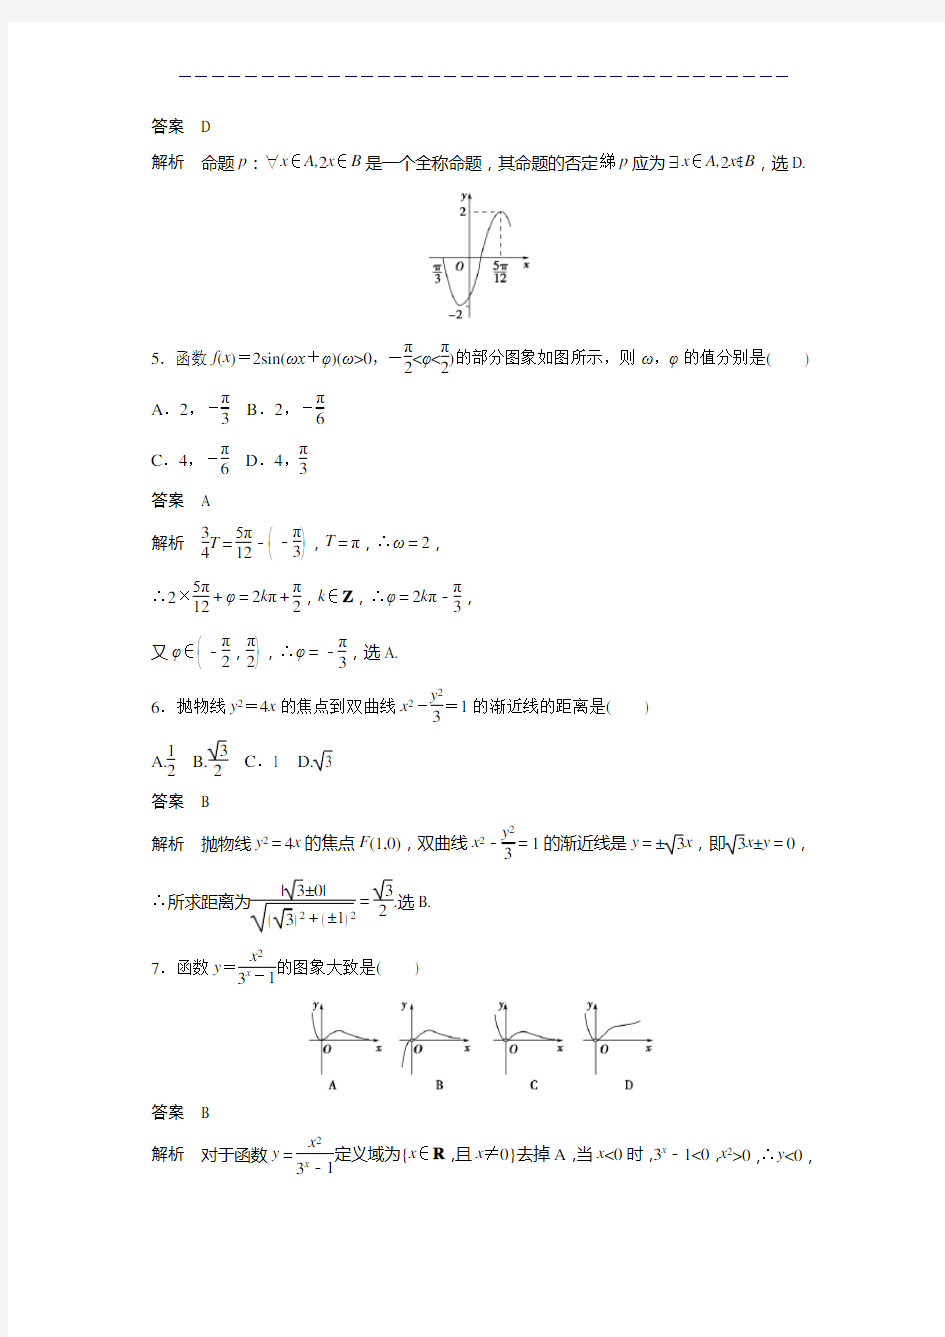 2013年高考四川卷理科数学试题及答案